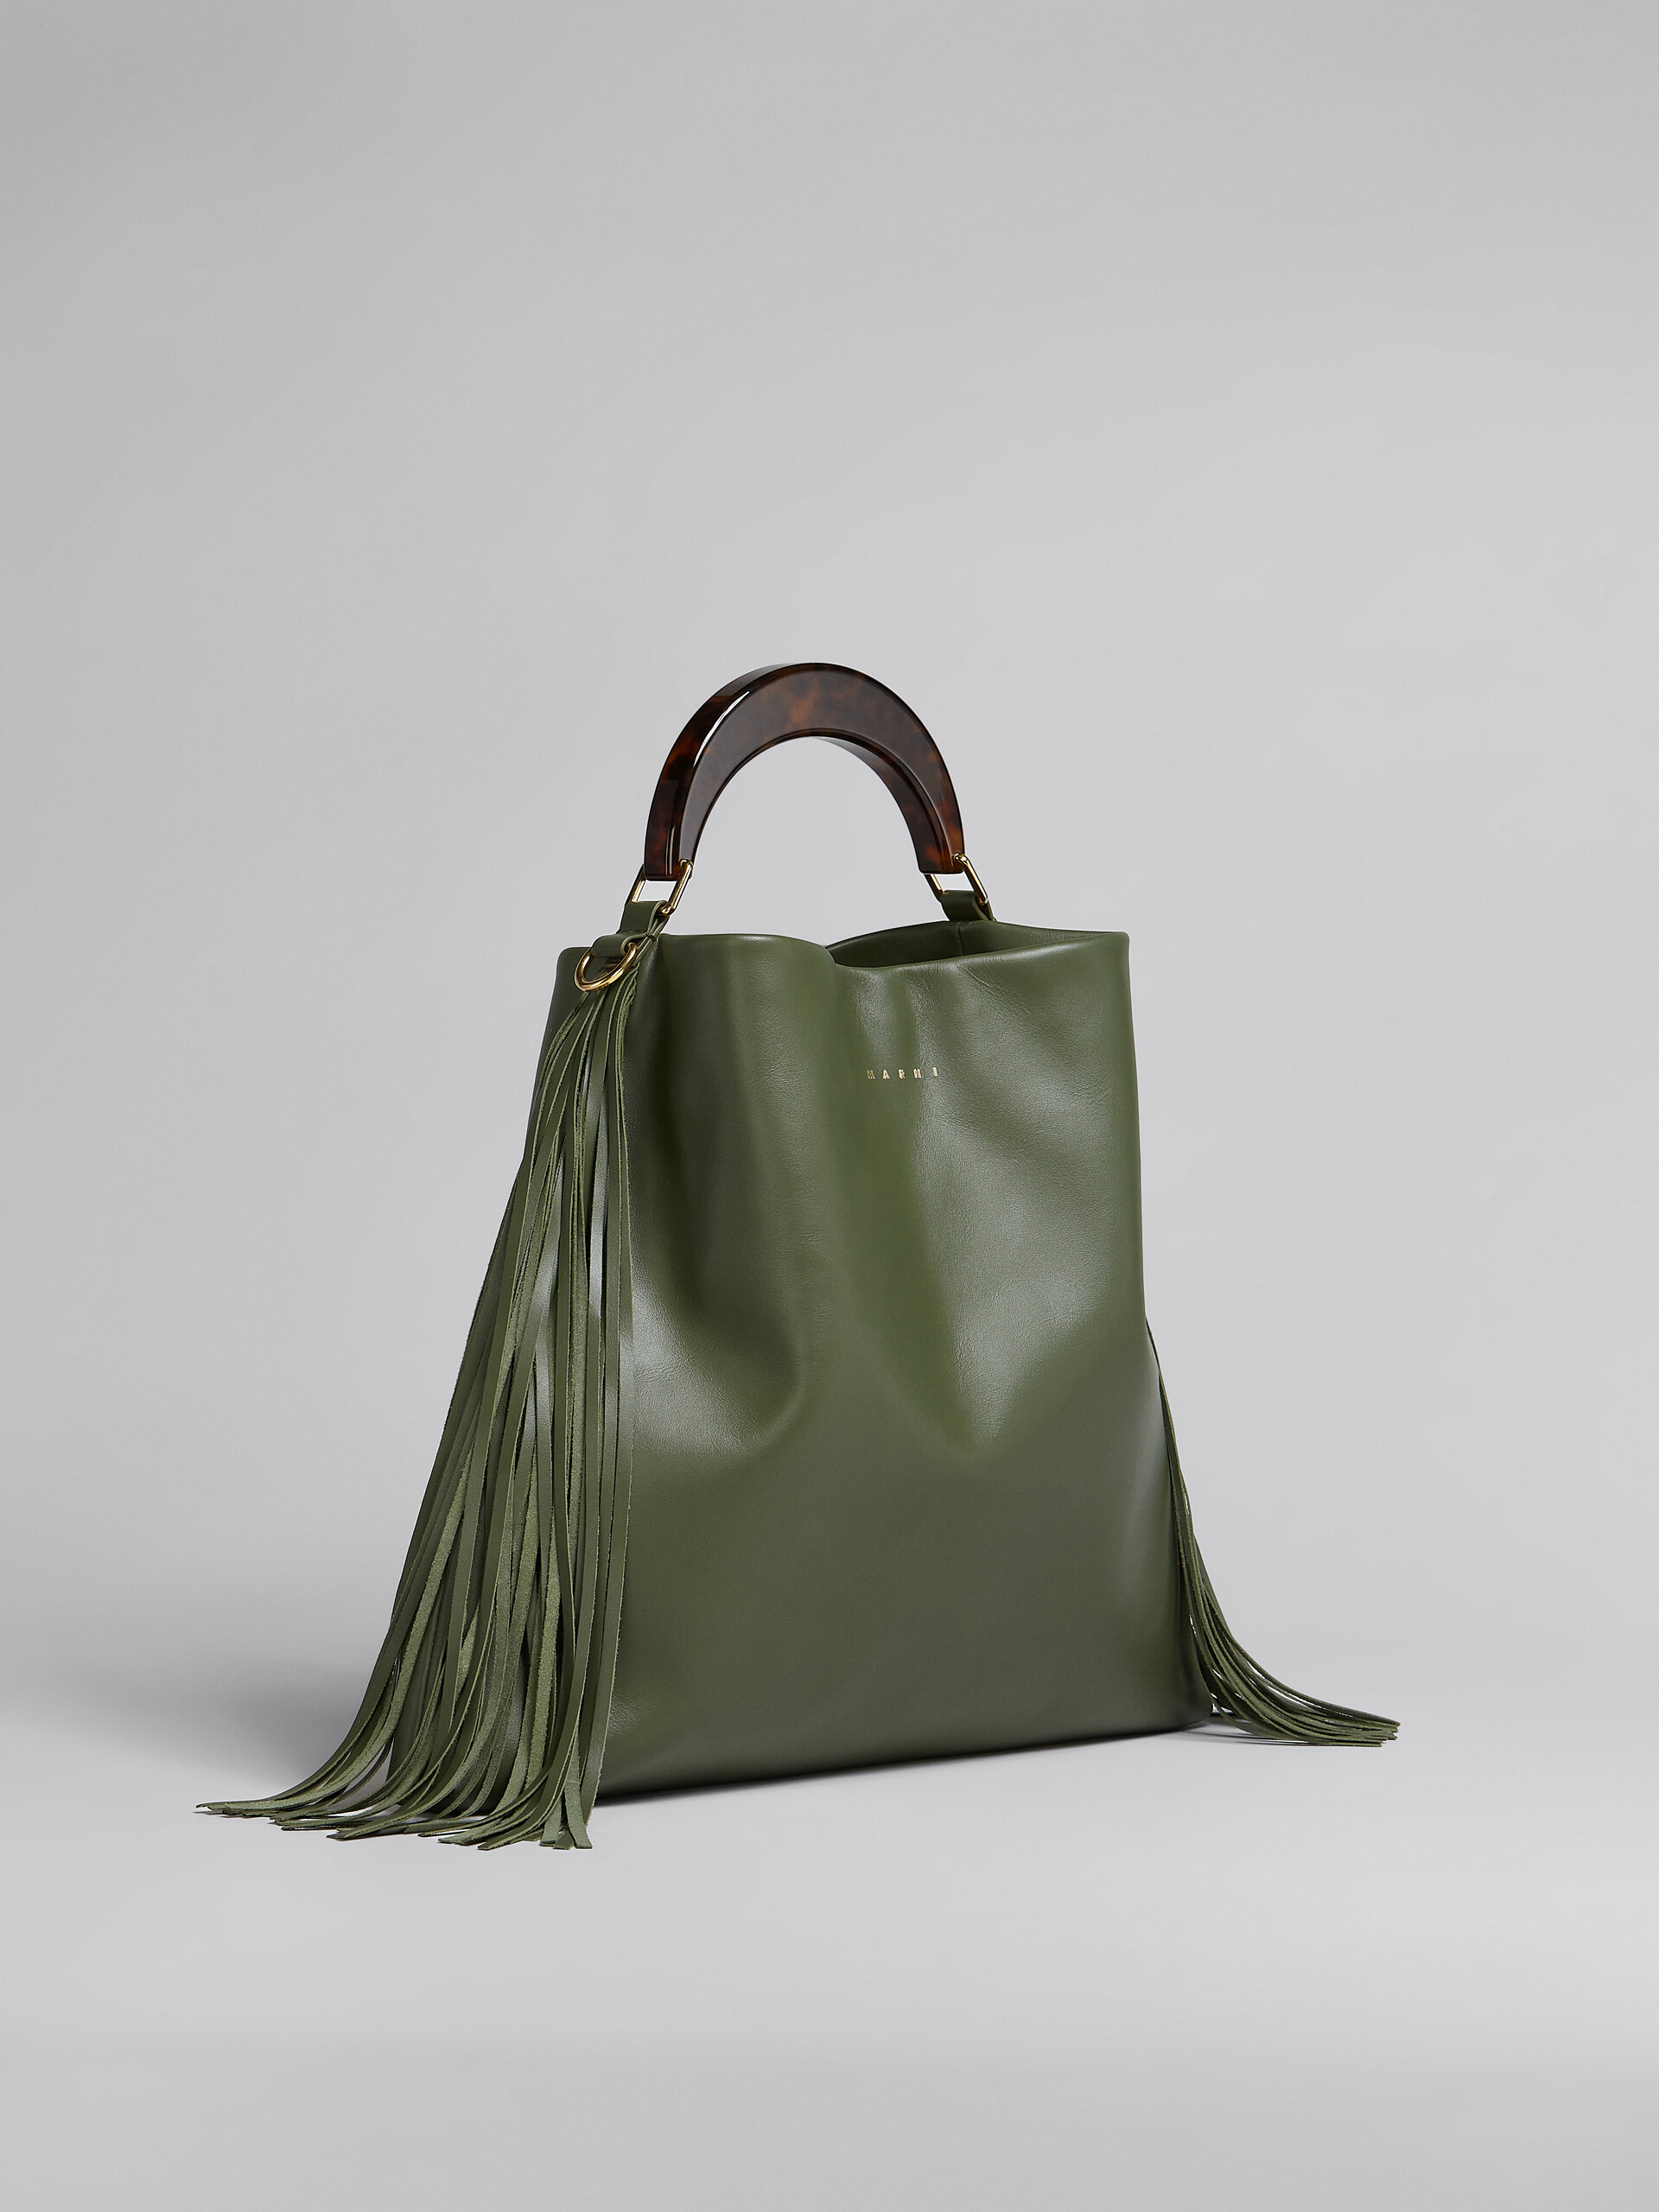 Venice Medium Bag in green leather with fringes - Shoulder Bag - Image 6